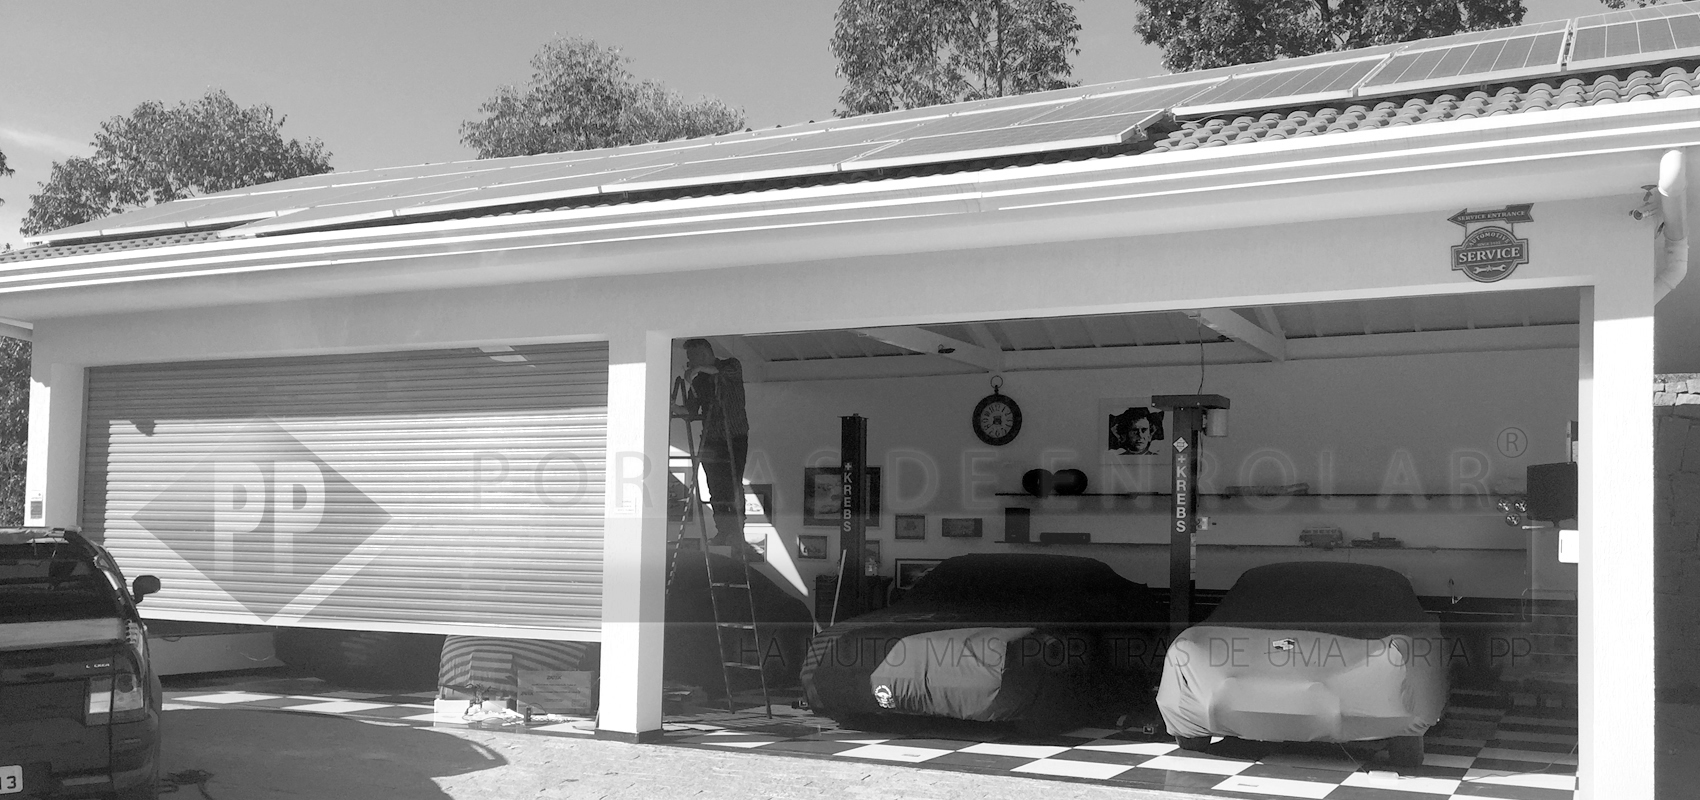 Portão de Garagem moderno